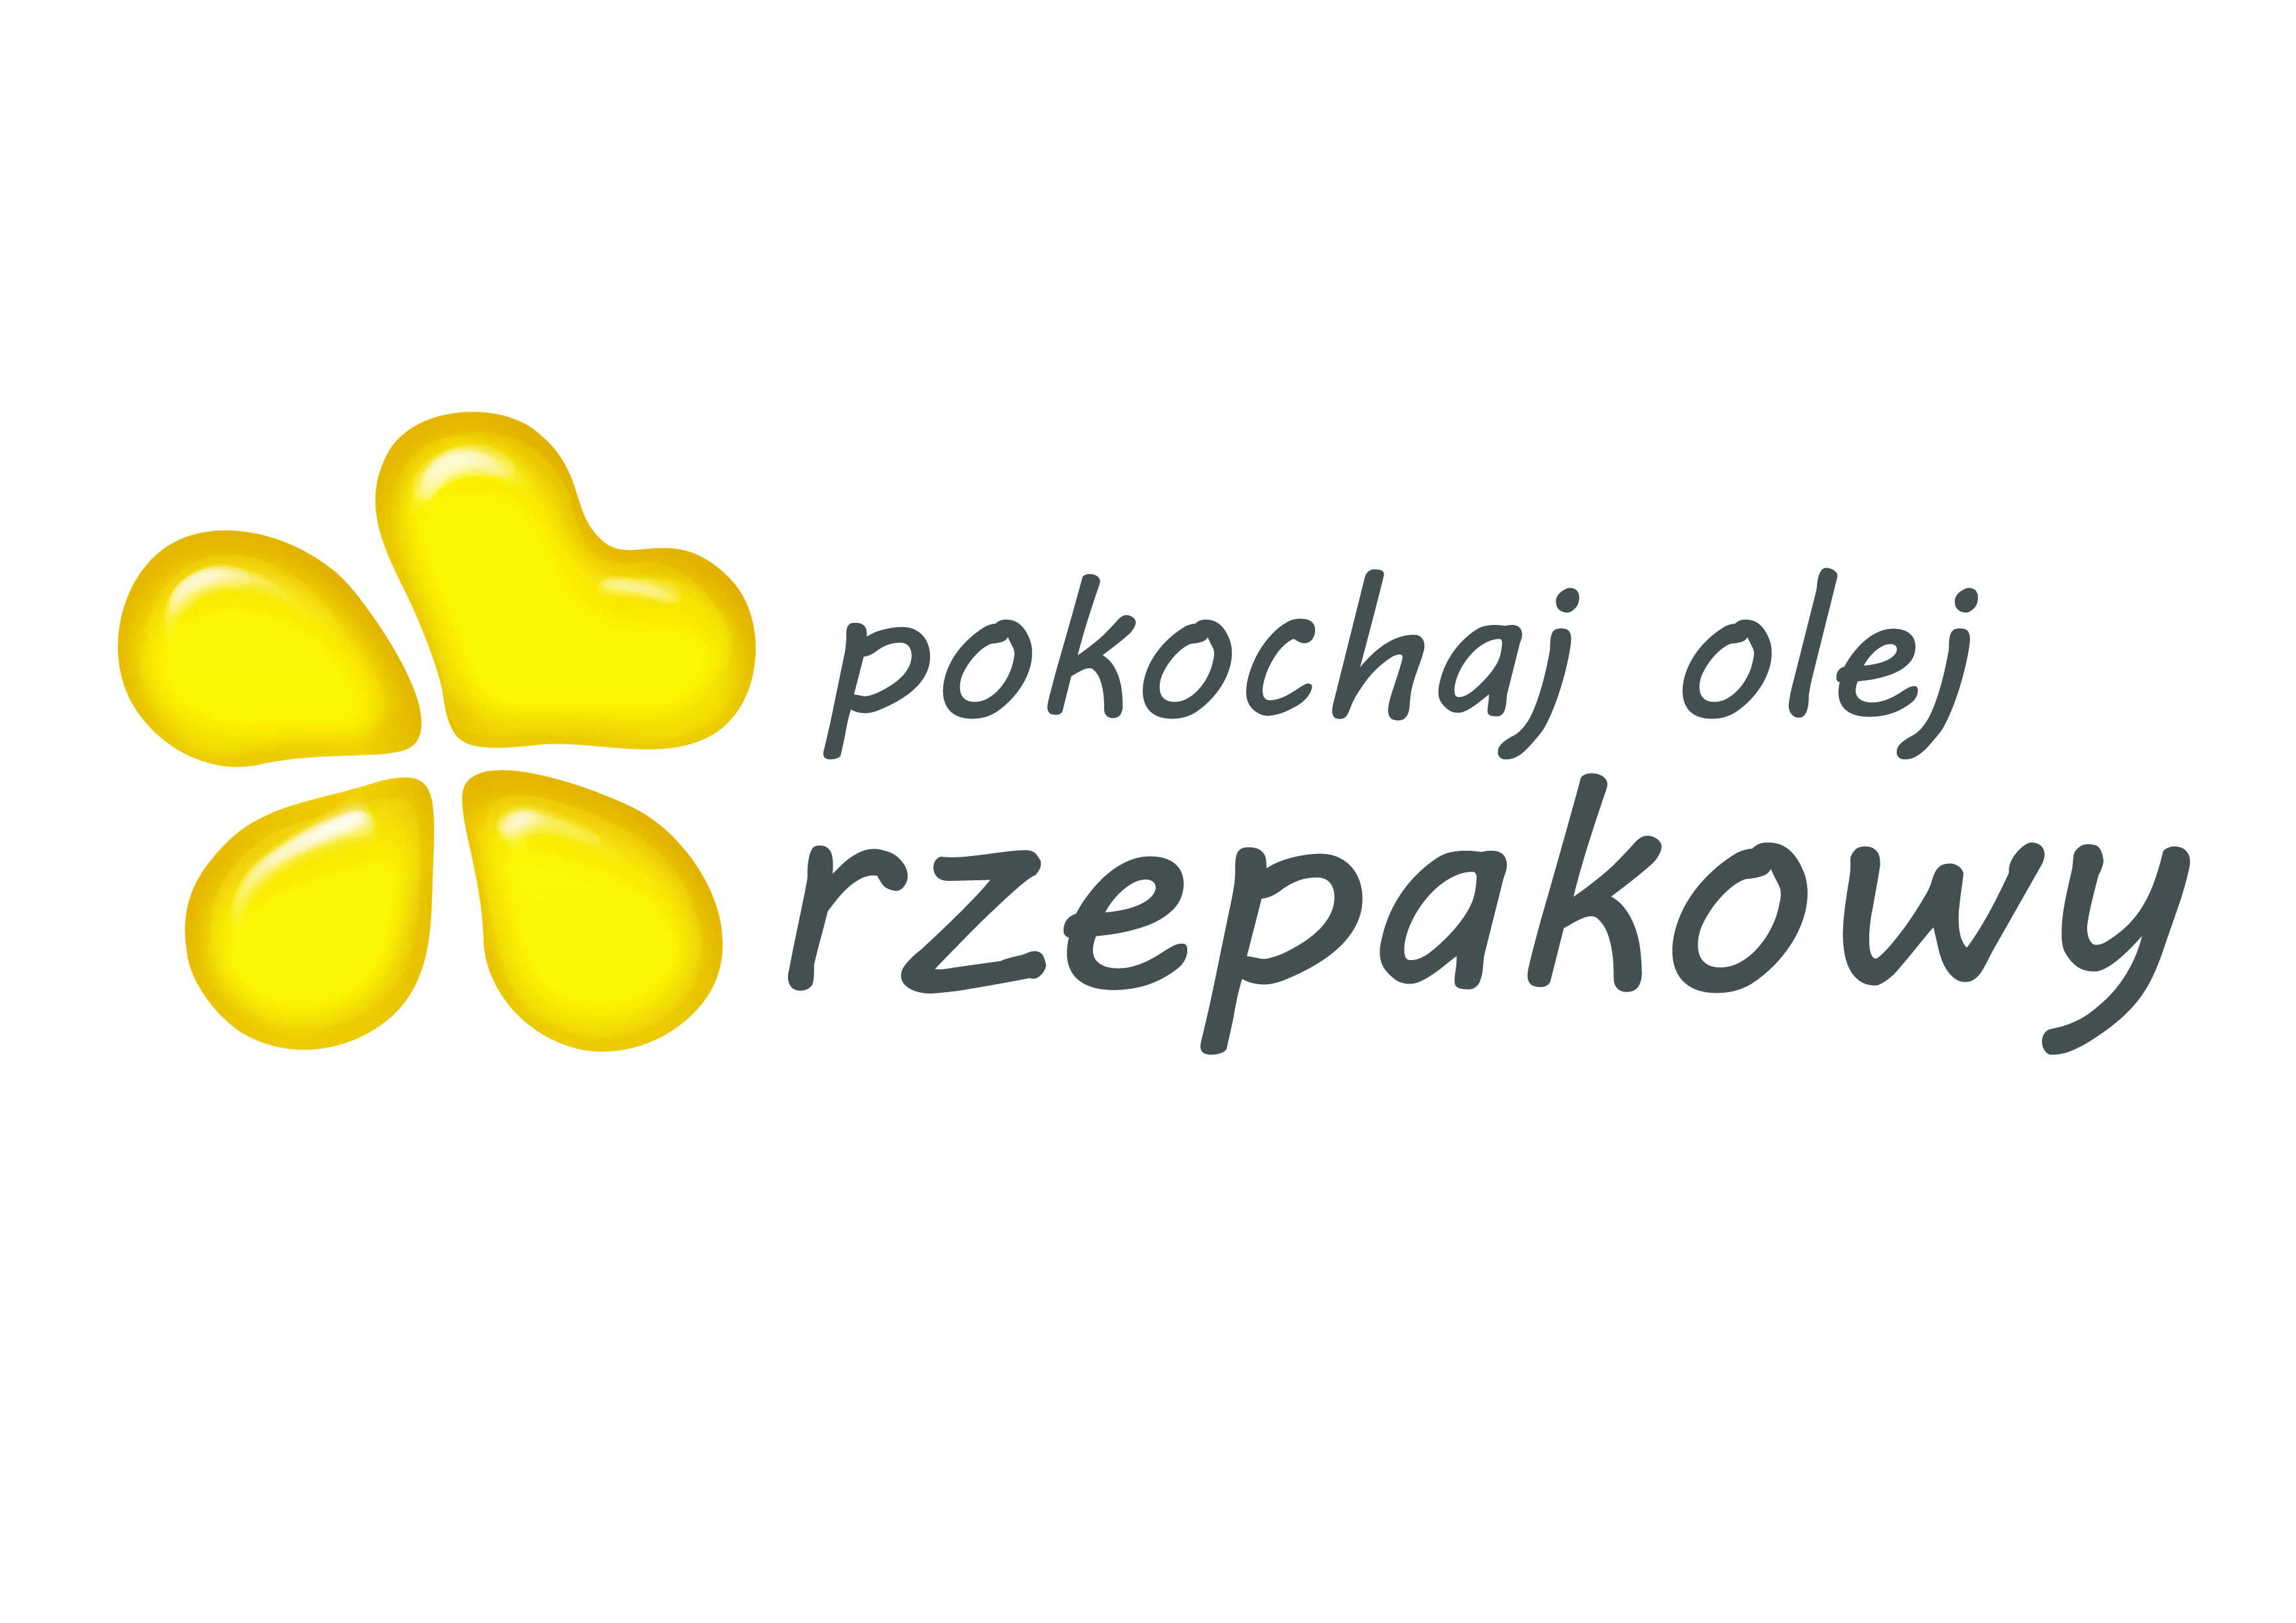 http://pokochajolejrzepakowy.eu/resources/logo-pokochaj-olej-rzepakowy.jpg